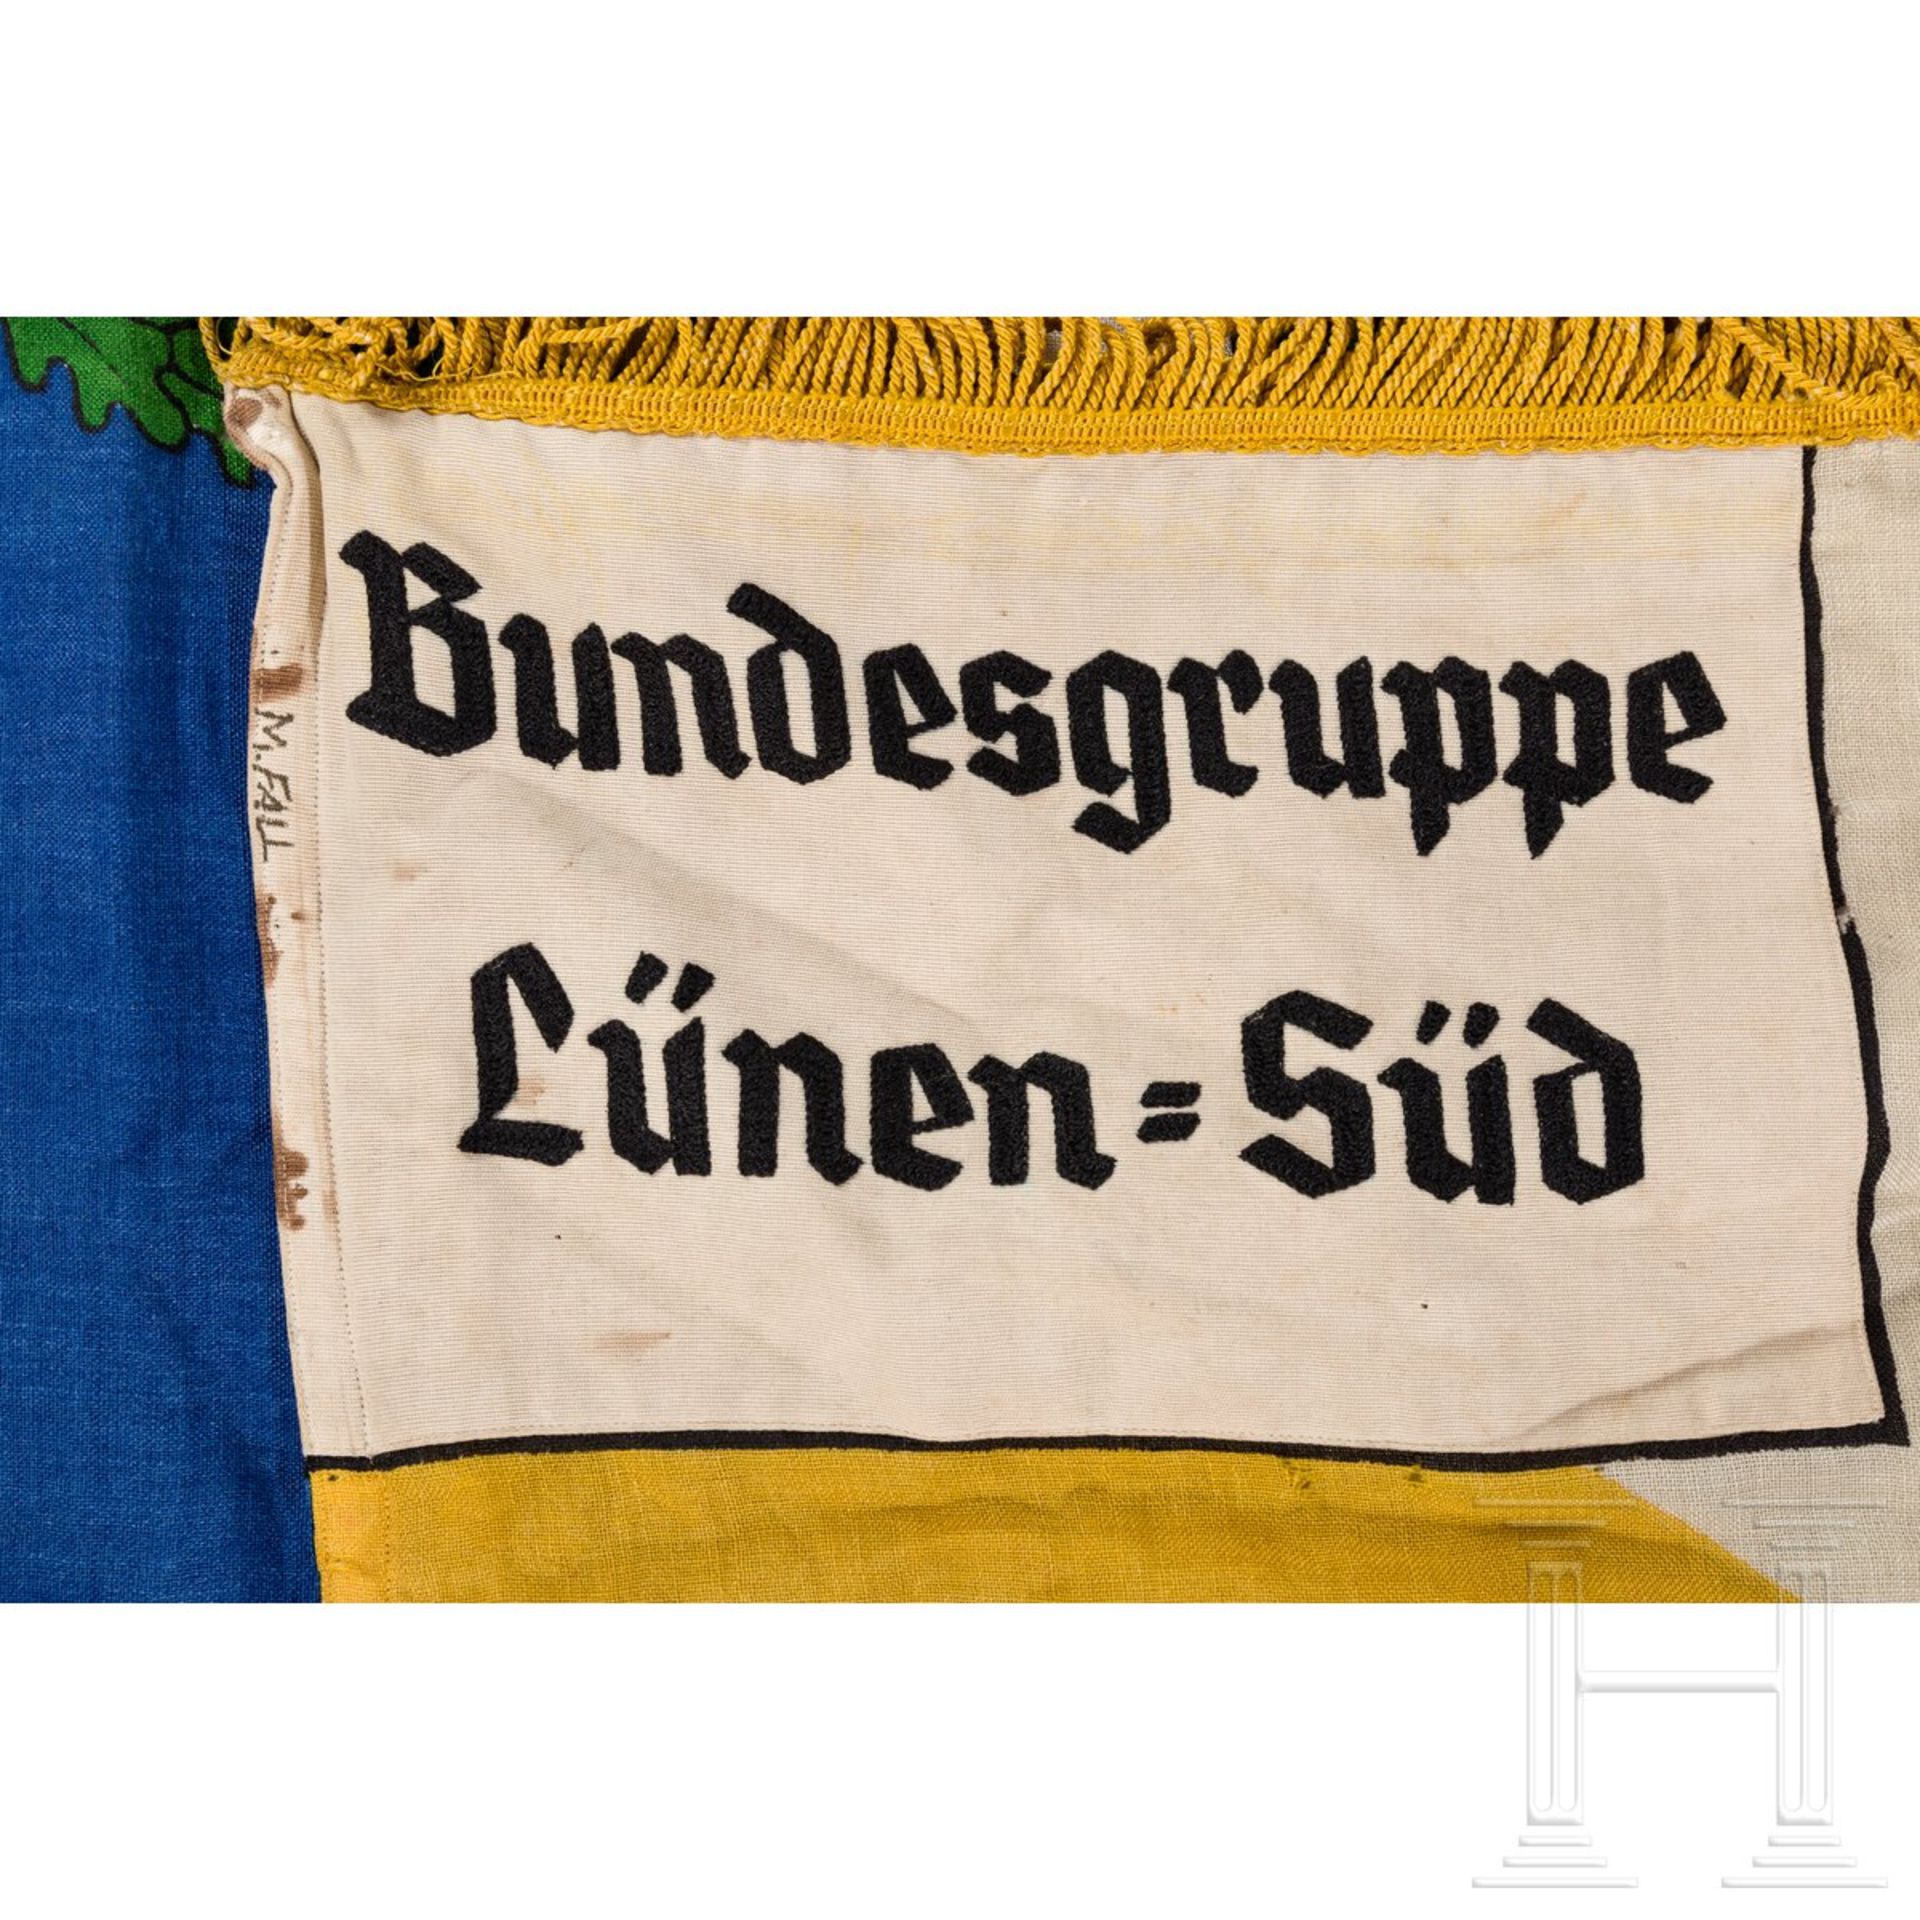 Fahne der Bundesgruppe Lünen-Süd des Bundes heimattreuer Schlesier - Image 3 of 3